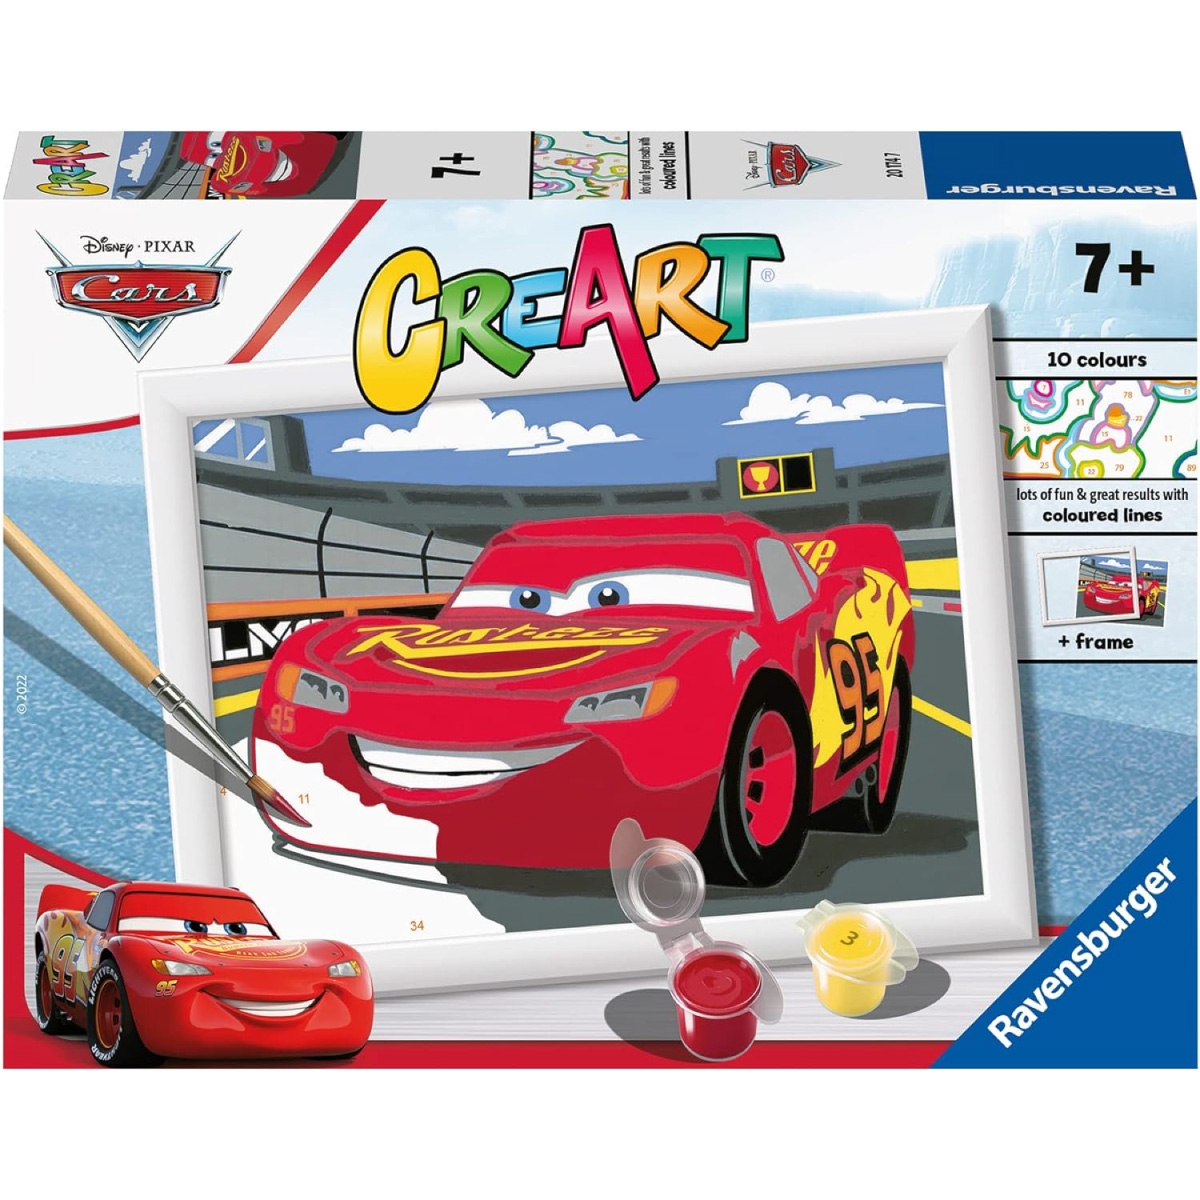 Ravensburger - CreArt Serie E: Cars: Lightning McQueen, Kit per Dipingere  con i Numeri, Contiene una Tavola Prestampata, Pennello, Colori e  Accessori, Gioco Creativo per Bambini 9+ Anni a 10,99 €